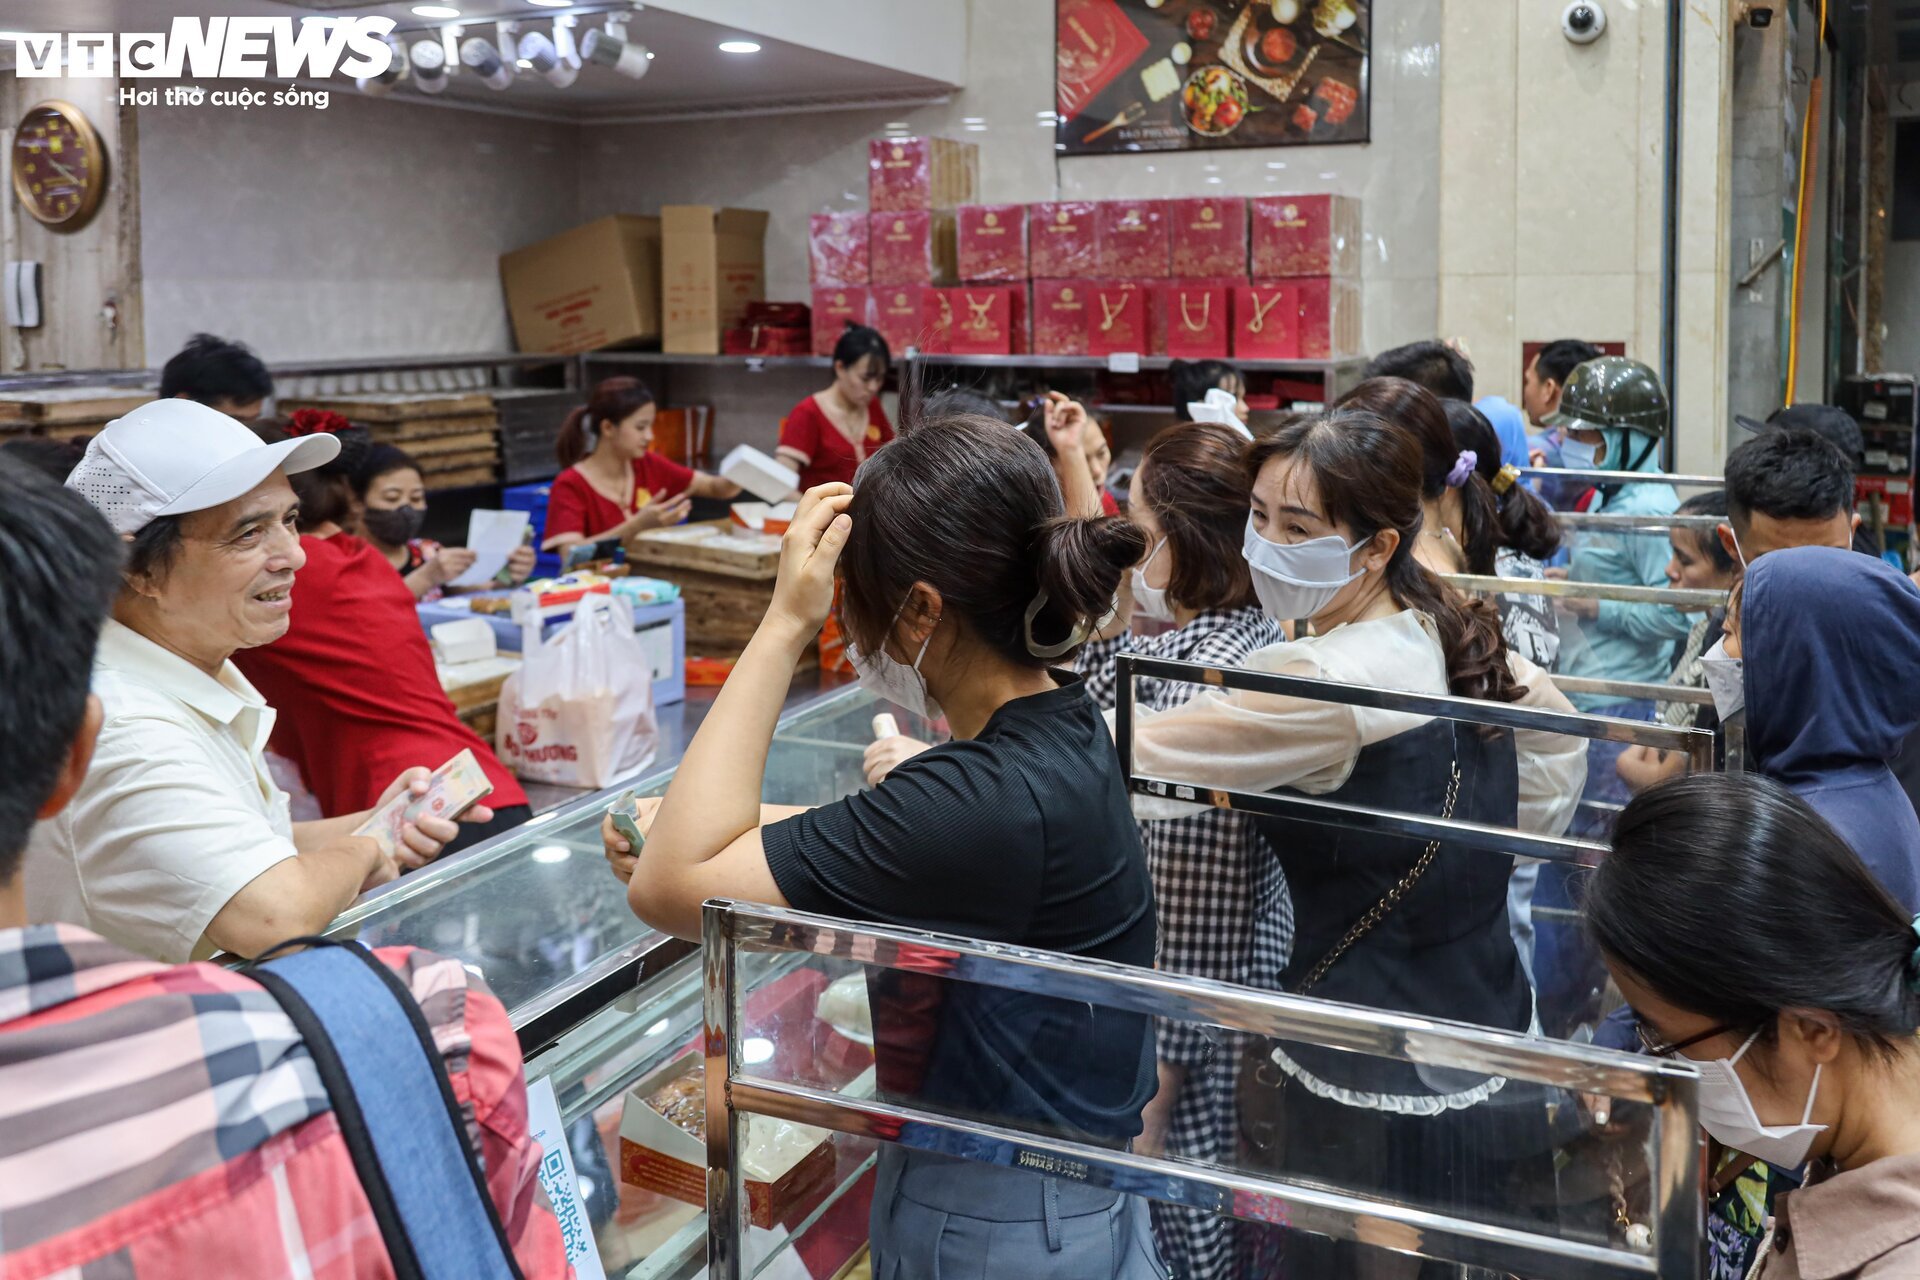 Hàng trăm người xếp hàng chờ mua bánh trung thu ở Hà Nội - Ảnh 15.